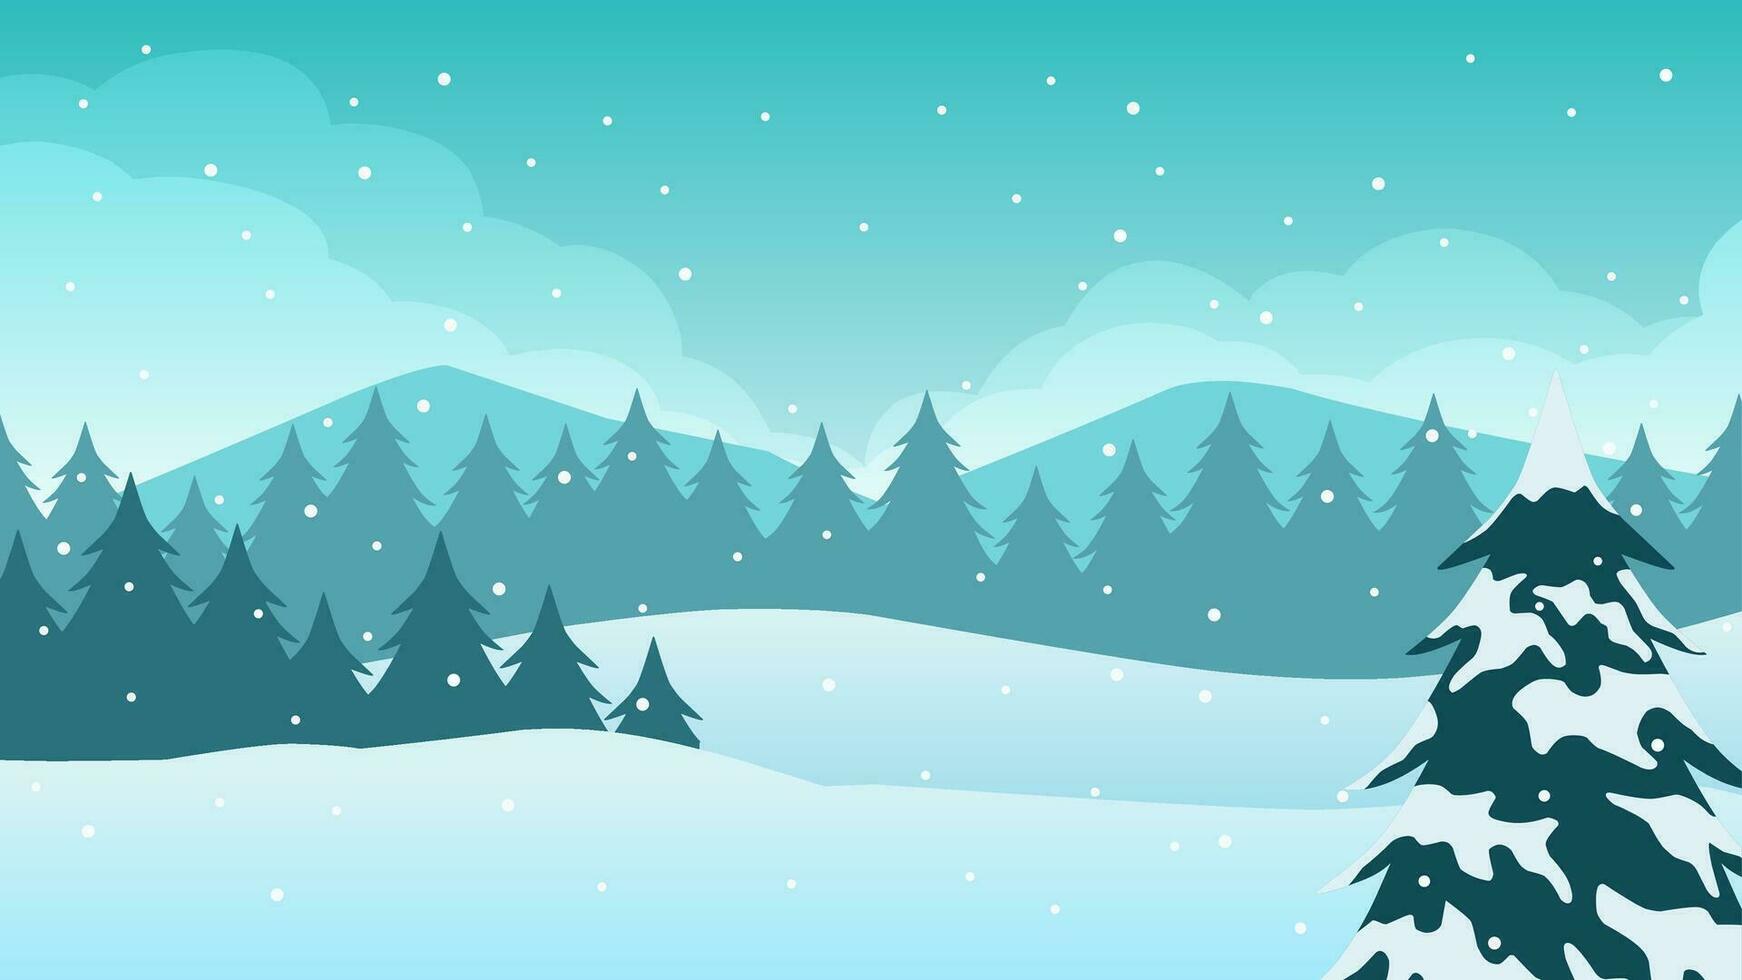 vinter- tall skog landskap vektor illustration. landskap av snö täckt barr- i kall säsong. snöig tall skog landskap för bakgrund, tapet eller illustration